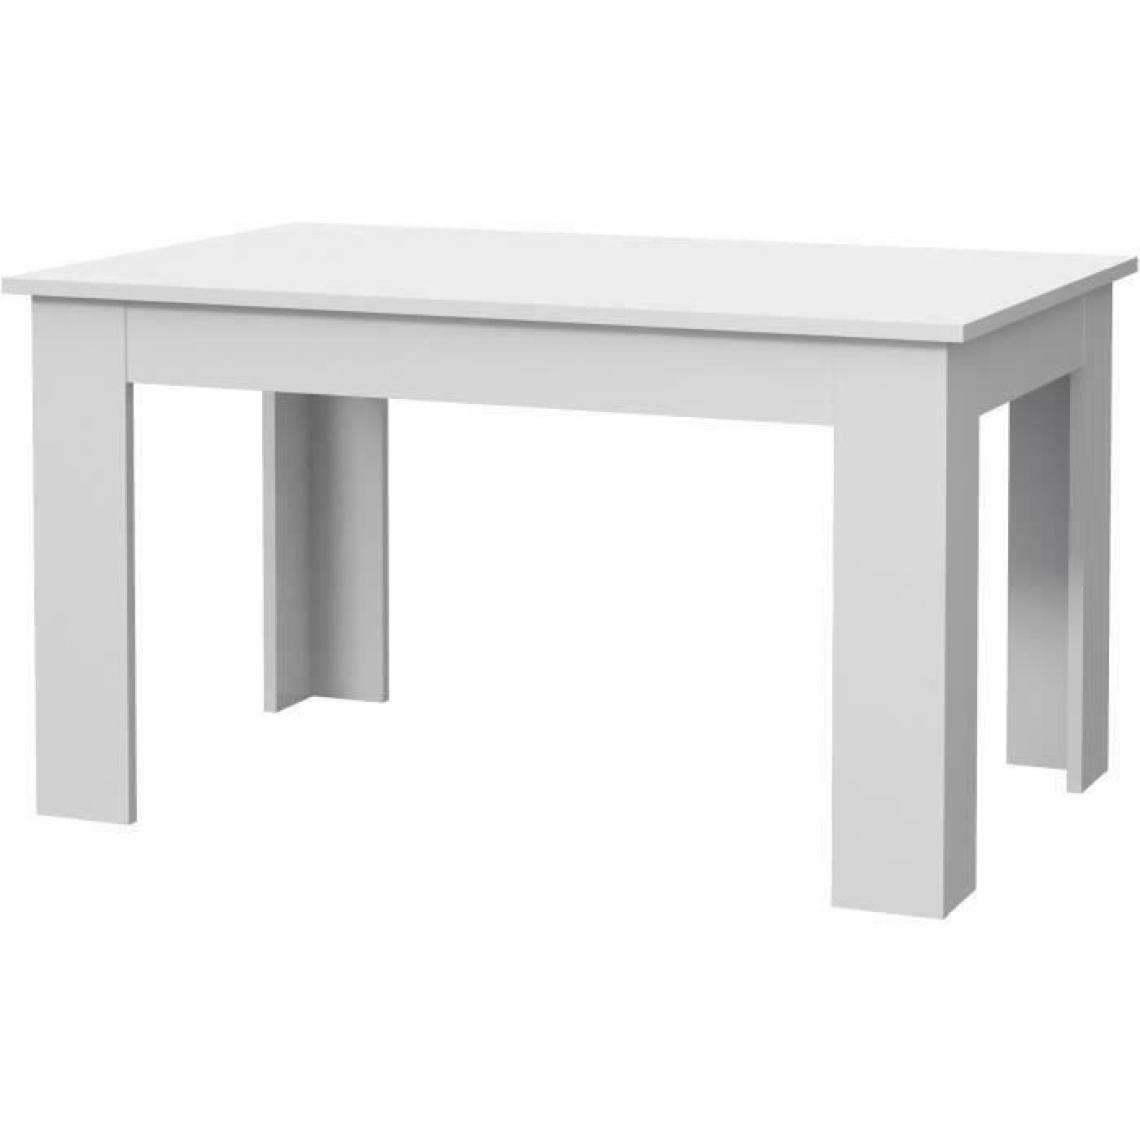 Cstore - PILVI Table à manger - Blanc - L 140 x I90 x H 75 cm - Tables à manger